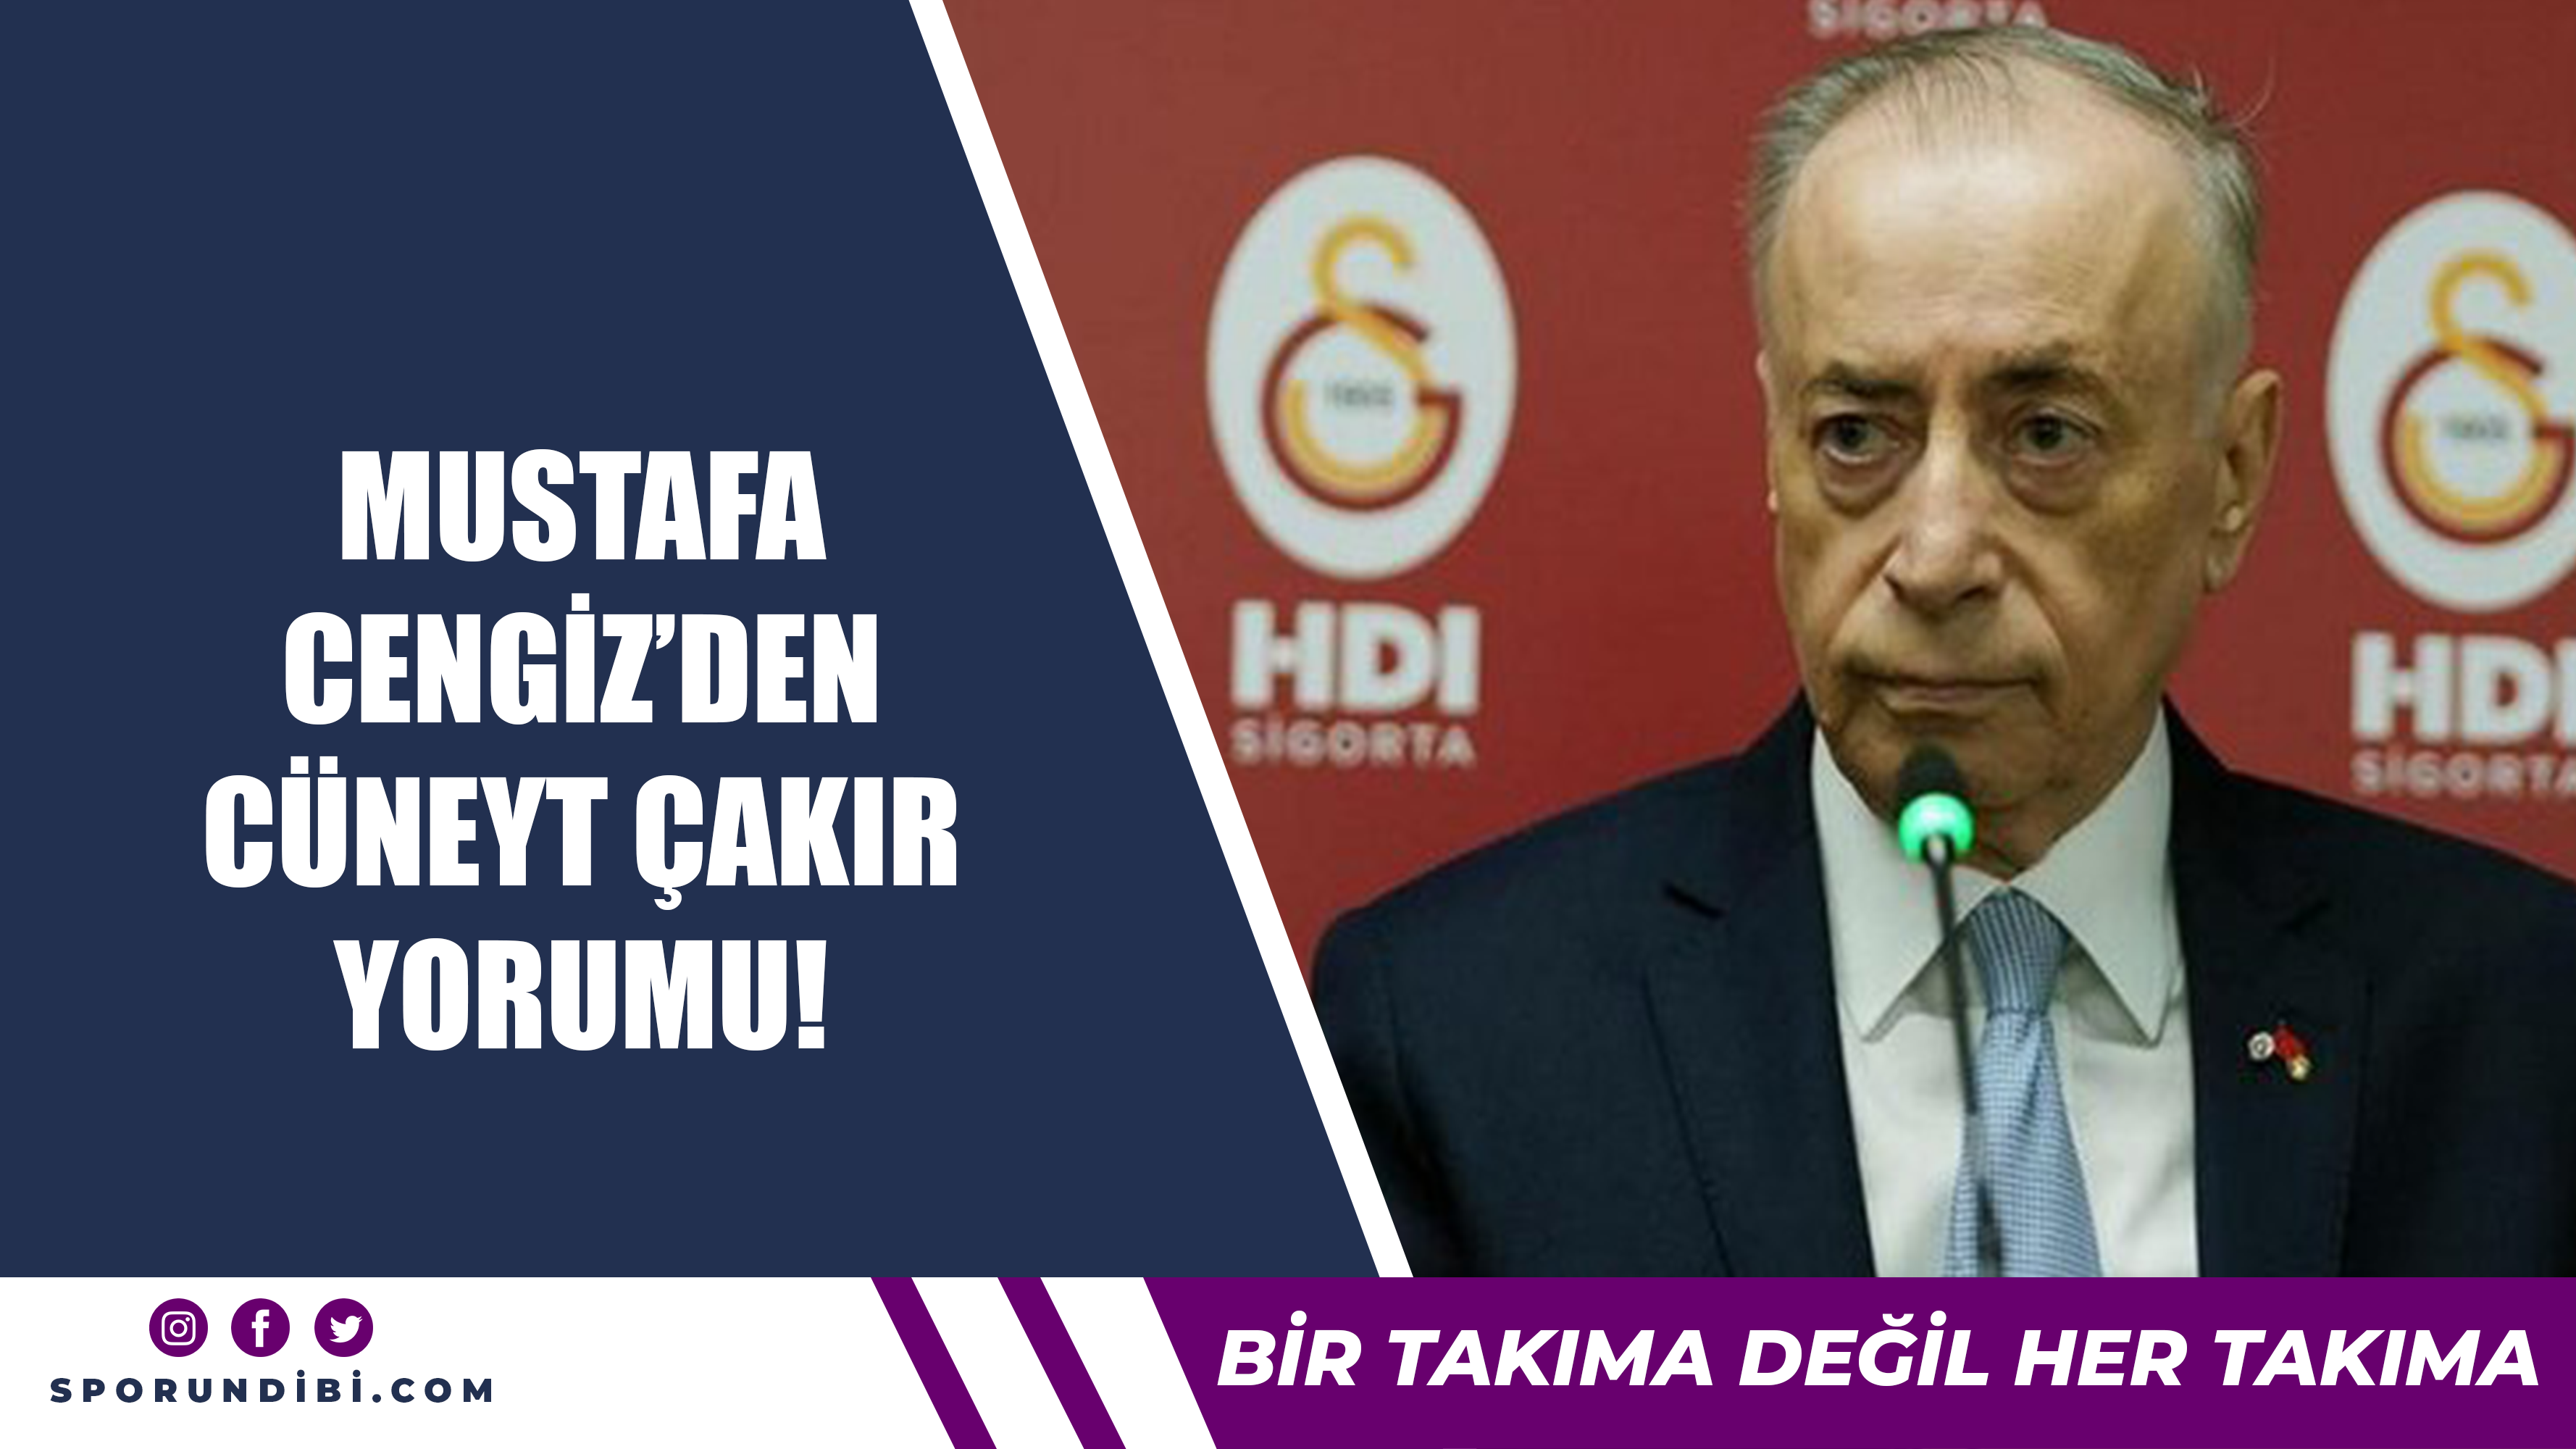 Mustafa Cengiz'den Cüneyt Çakır yorumu!